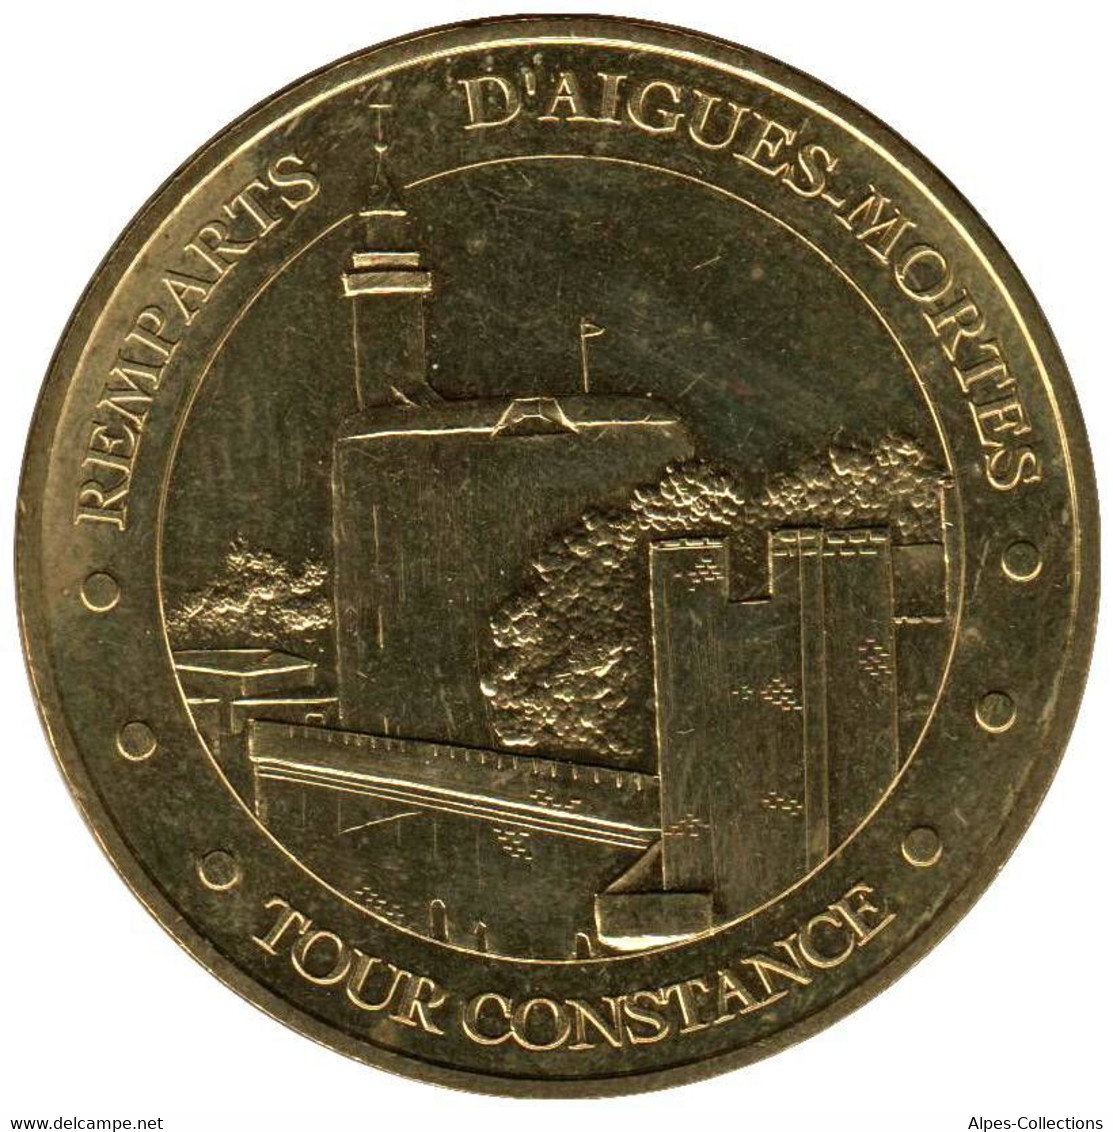 30-0460 - JETON TOURISTIQUE MDP - Remparts D'Aigues-Mortes - 2015.5 - 2015